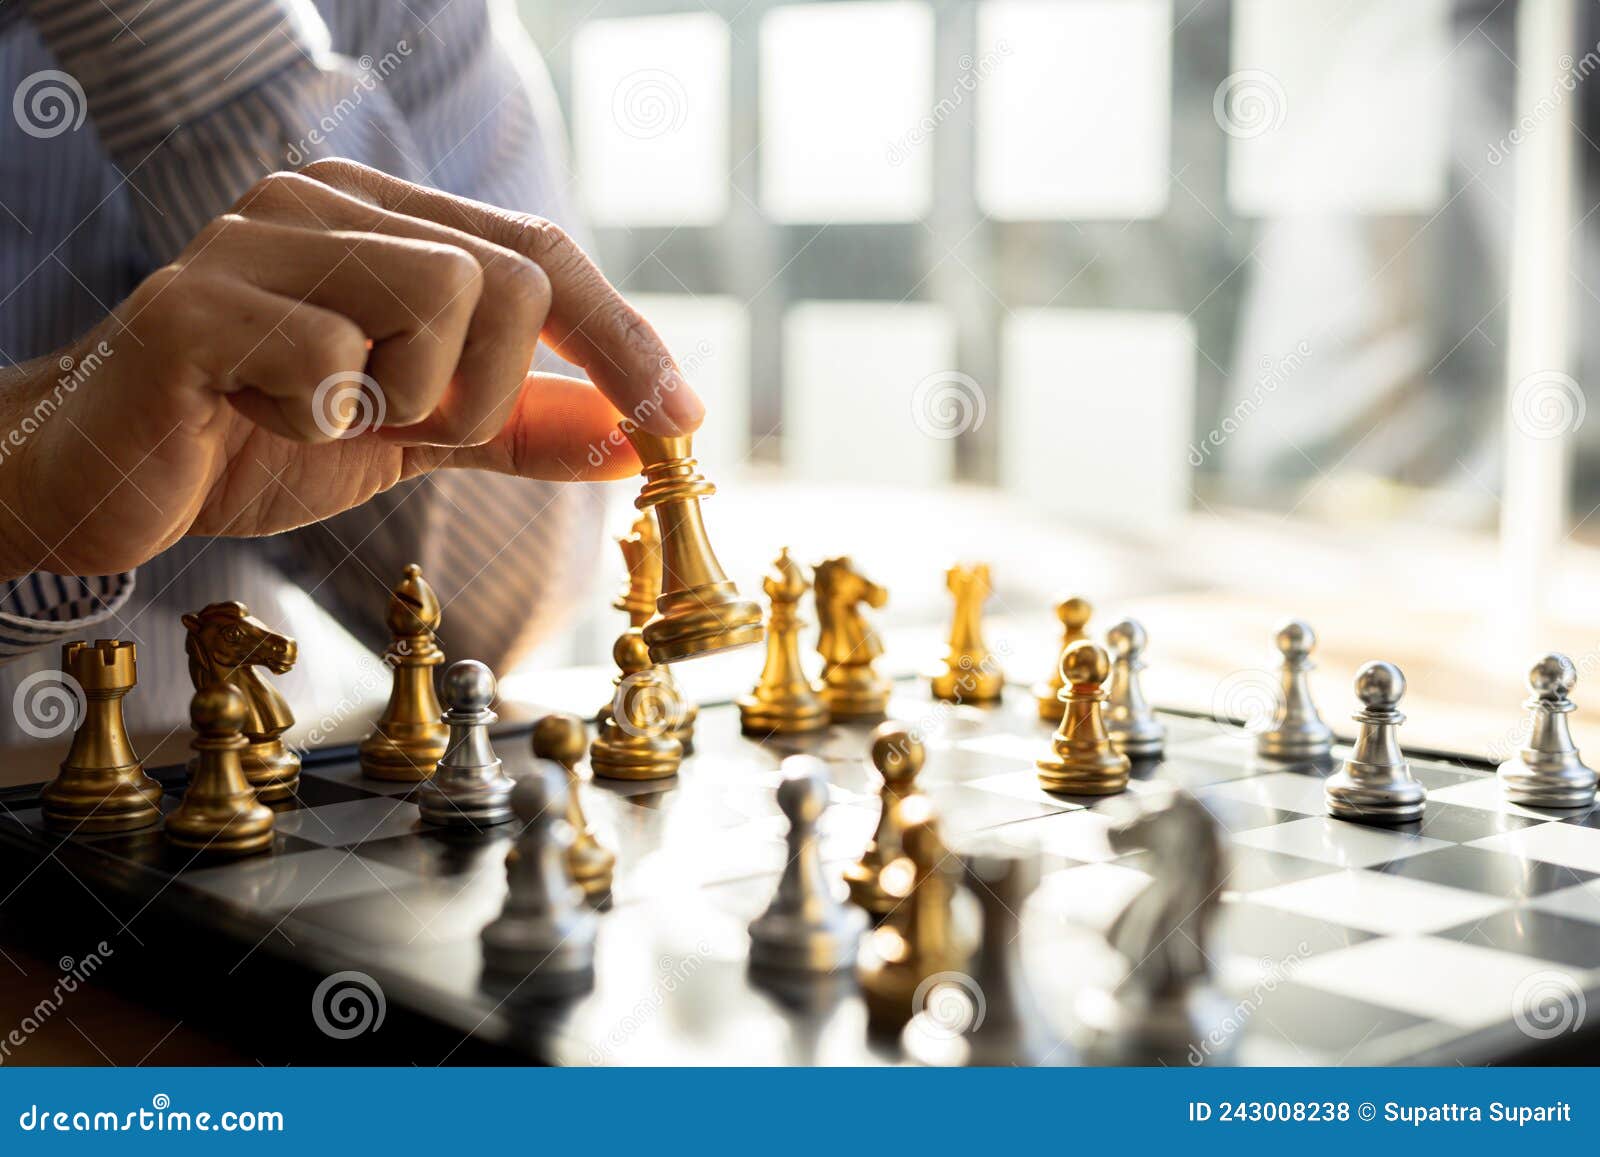 Pessoa jogando xadrez